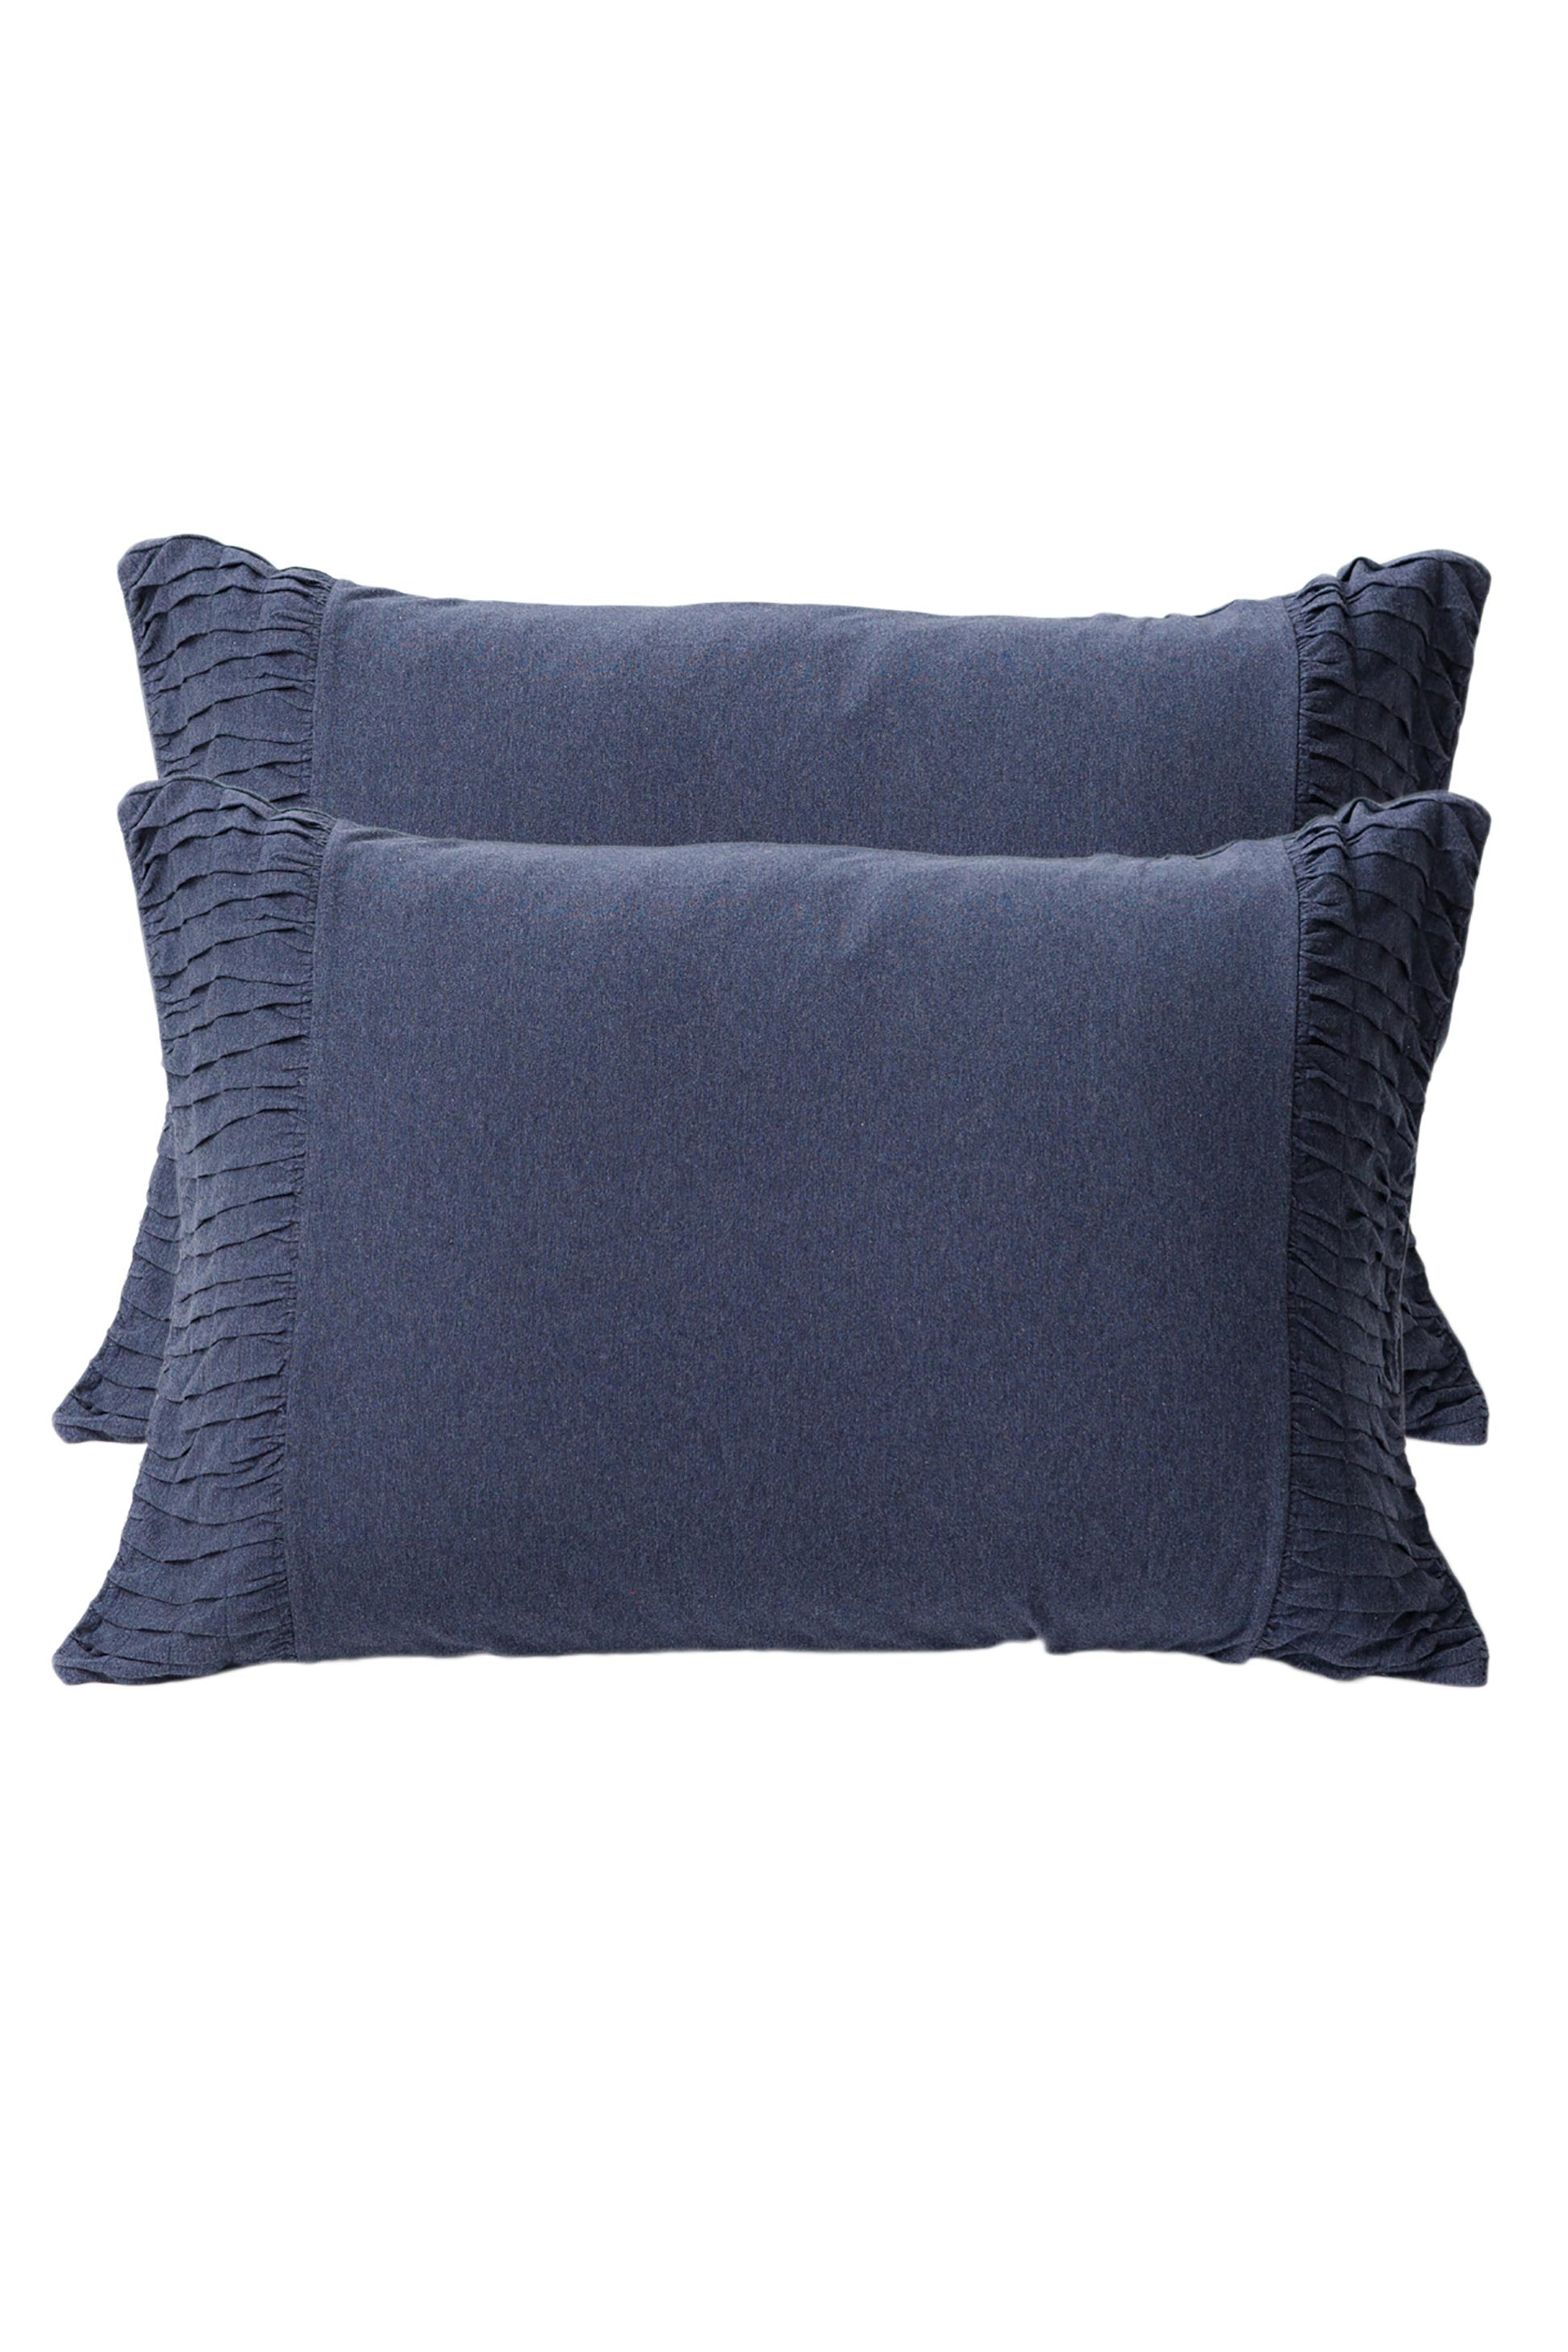 Lazybones Rosette Pillowcase Set - Indigo Marle